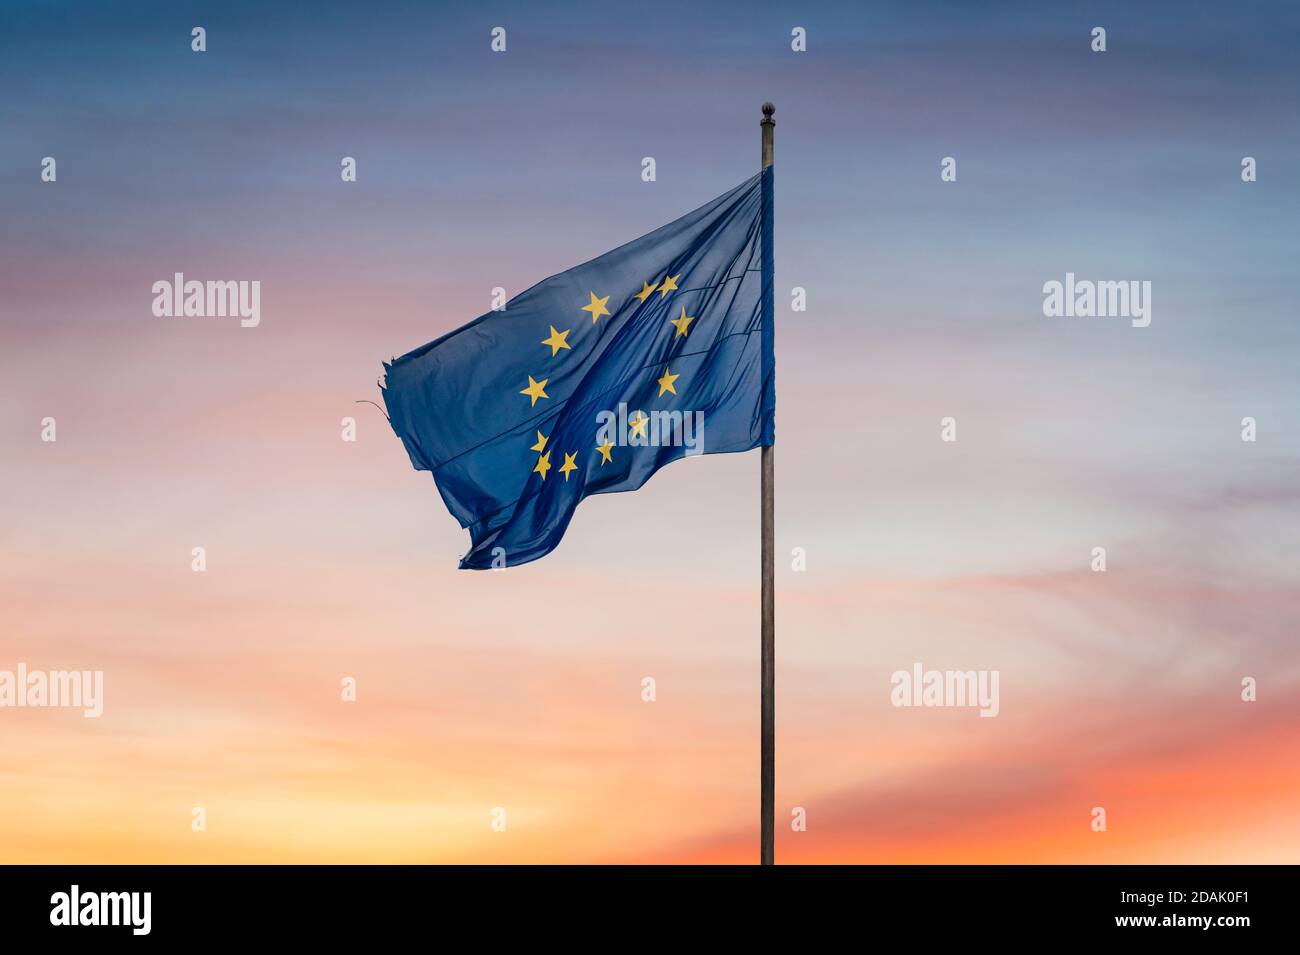 Zerfetzt / zerfetzt Europäische Union Flagge vor und Sonnenuntergang Hintergrund Die Europäische Union als Sonnenuntergangs bezeichnen - Konzept Stockfoto